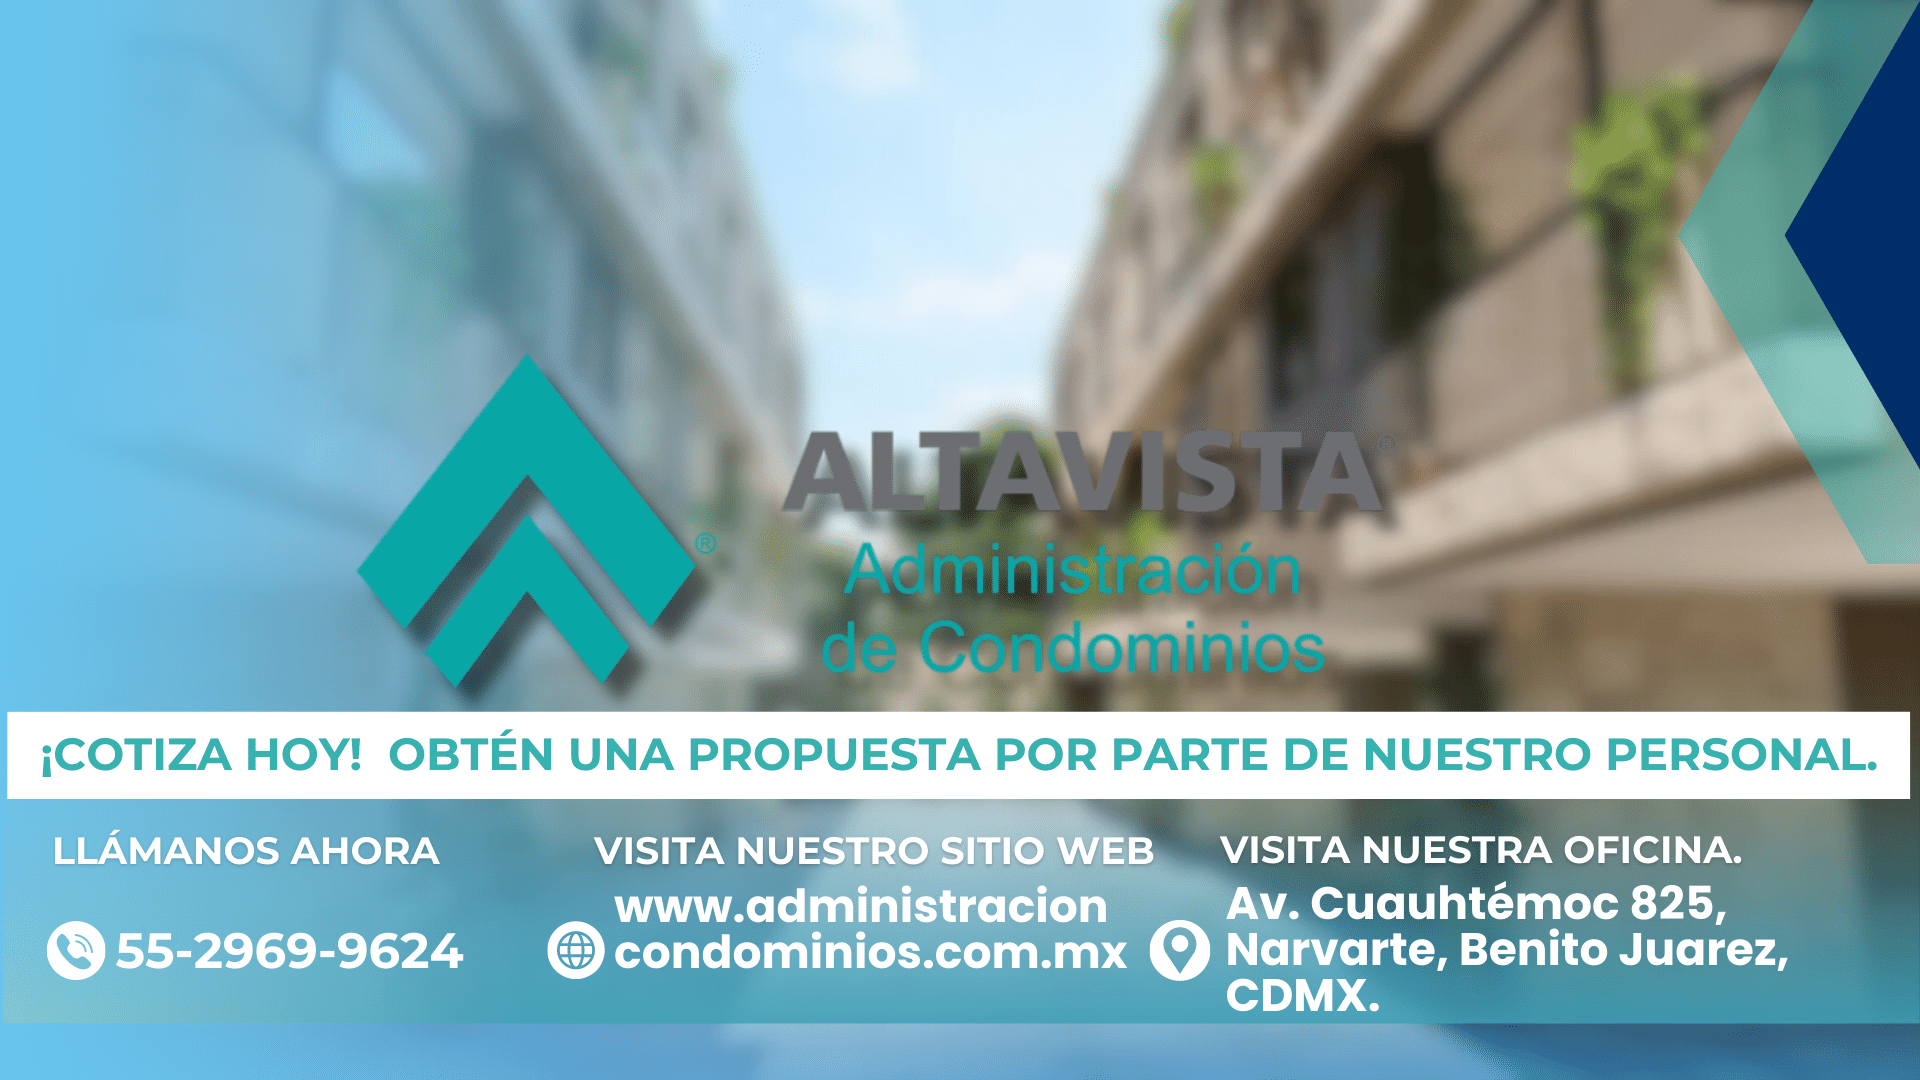 Administración Condominios en Ciudad de México y varios estados de la Republica Mexicana.